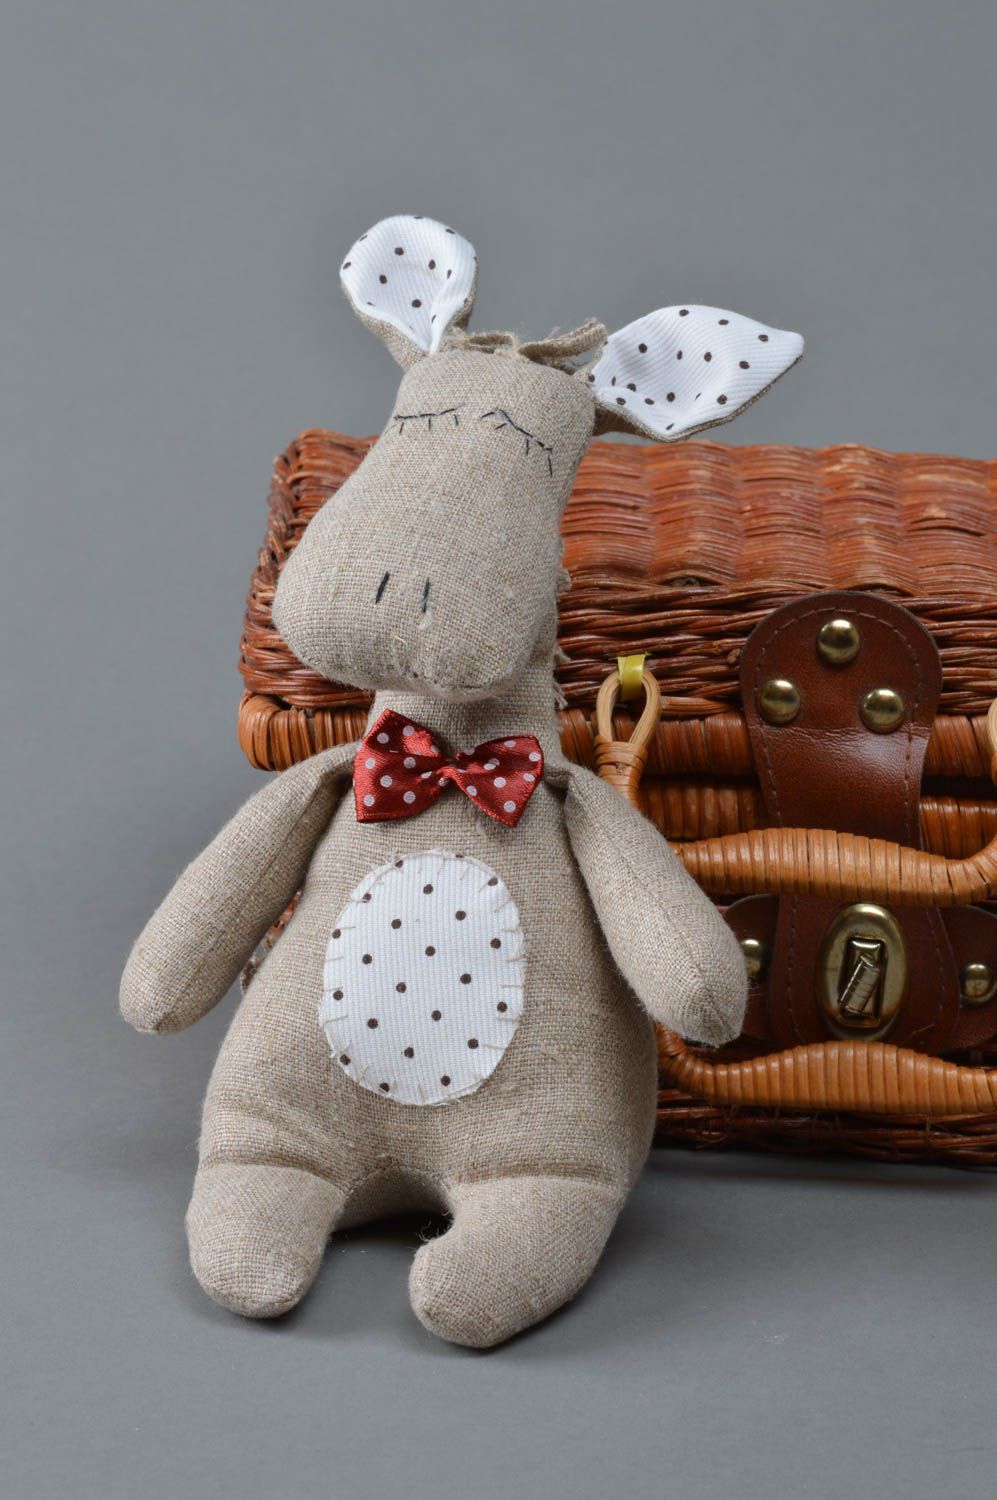 Мягкая игрушка ослик из льна для ребенка и декора дома ручной работы фото 1